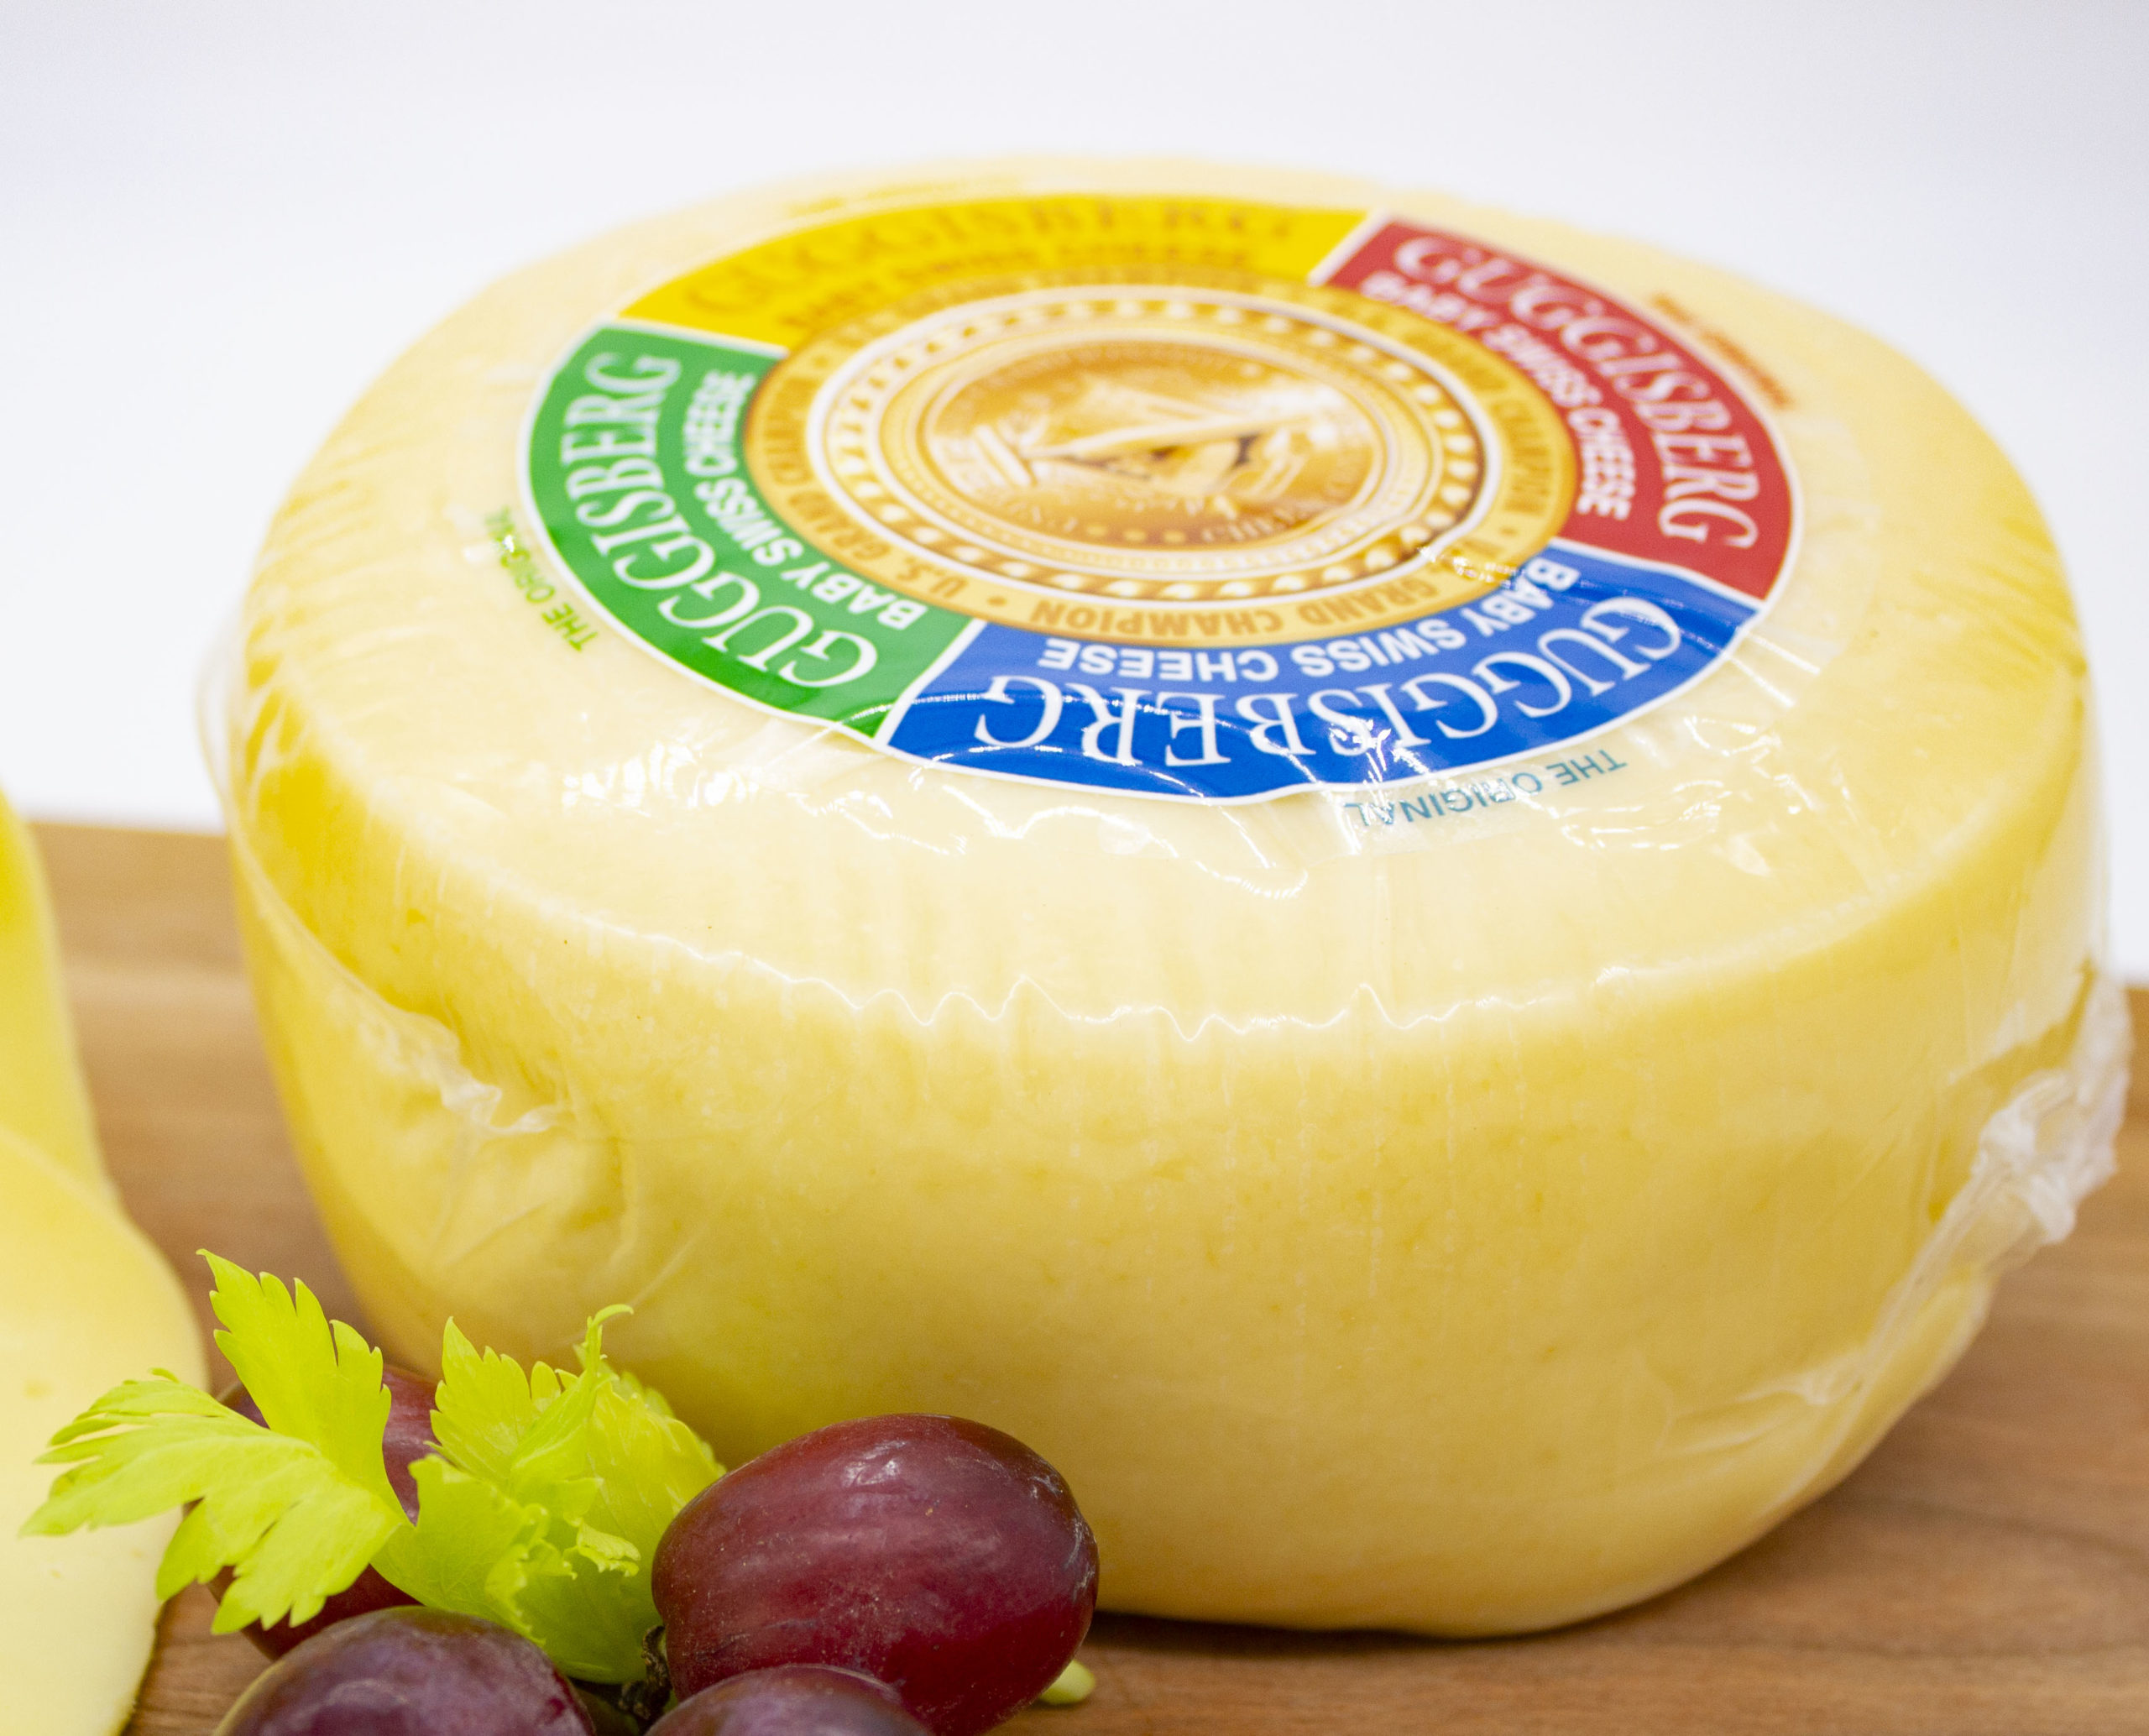 wheel of swiss cheese